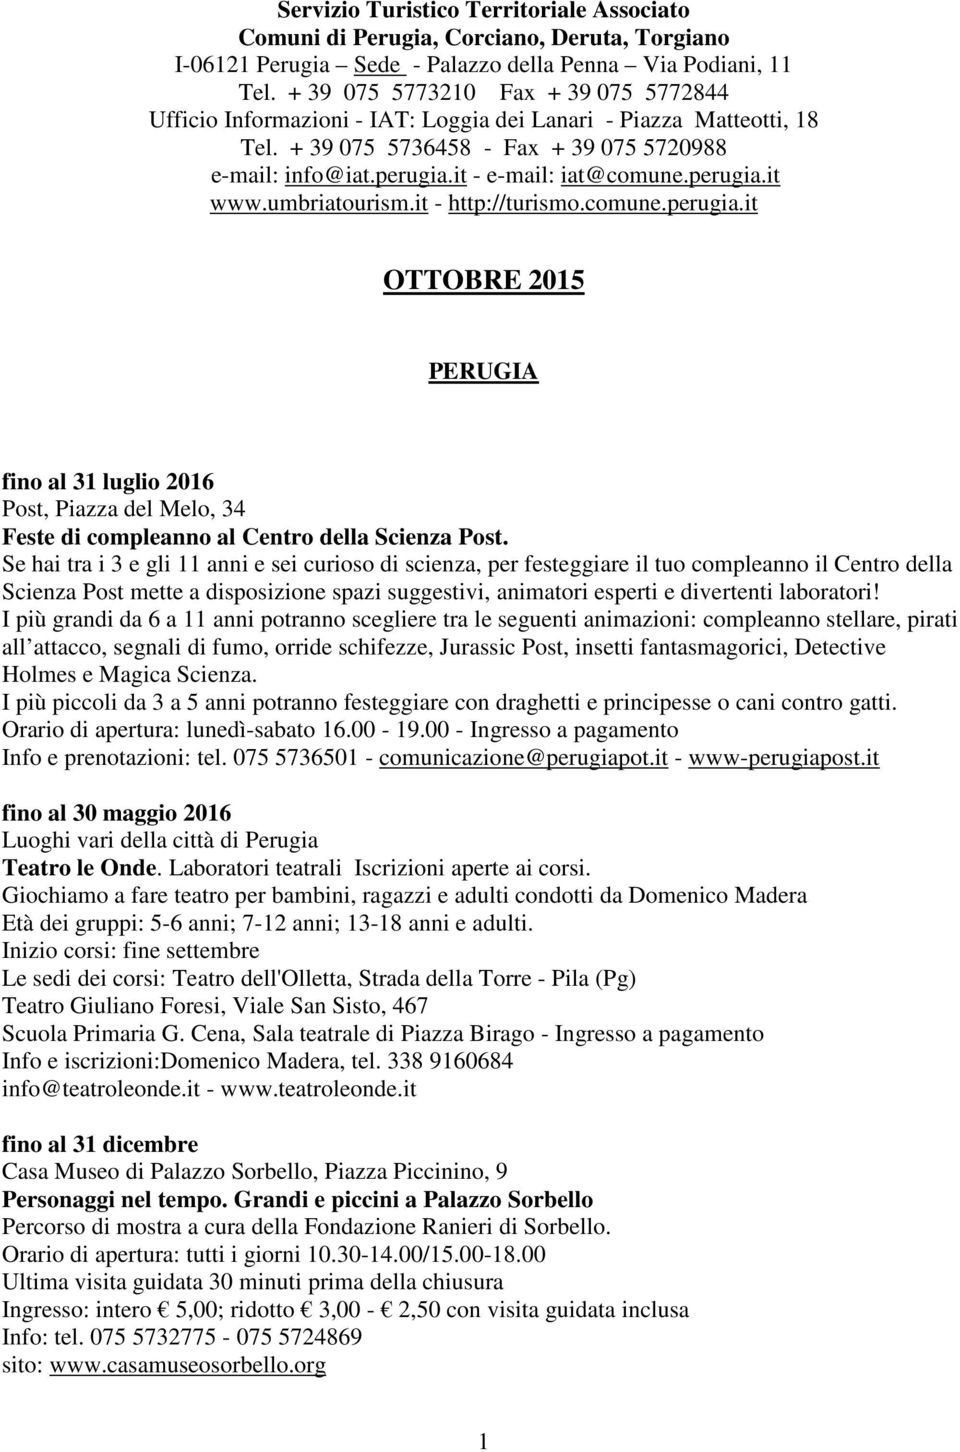 it - e-mail: iat@comune.perugia.it www.umbriatourism.it - http://turismo.comune.perugia.it OTTOBRE 2015 PERUGIA fino al 31 luglio 2016 Post, Piazza del Melo, 34 Feste di compleanno al Centro della Scienza Post.